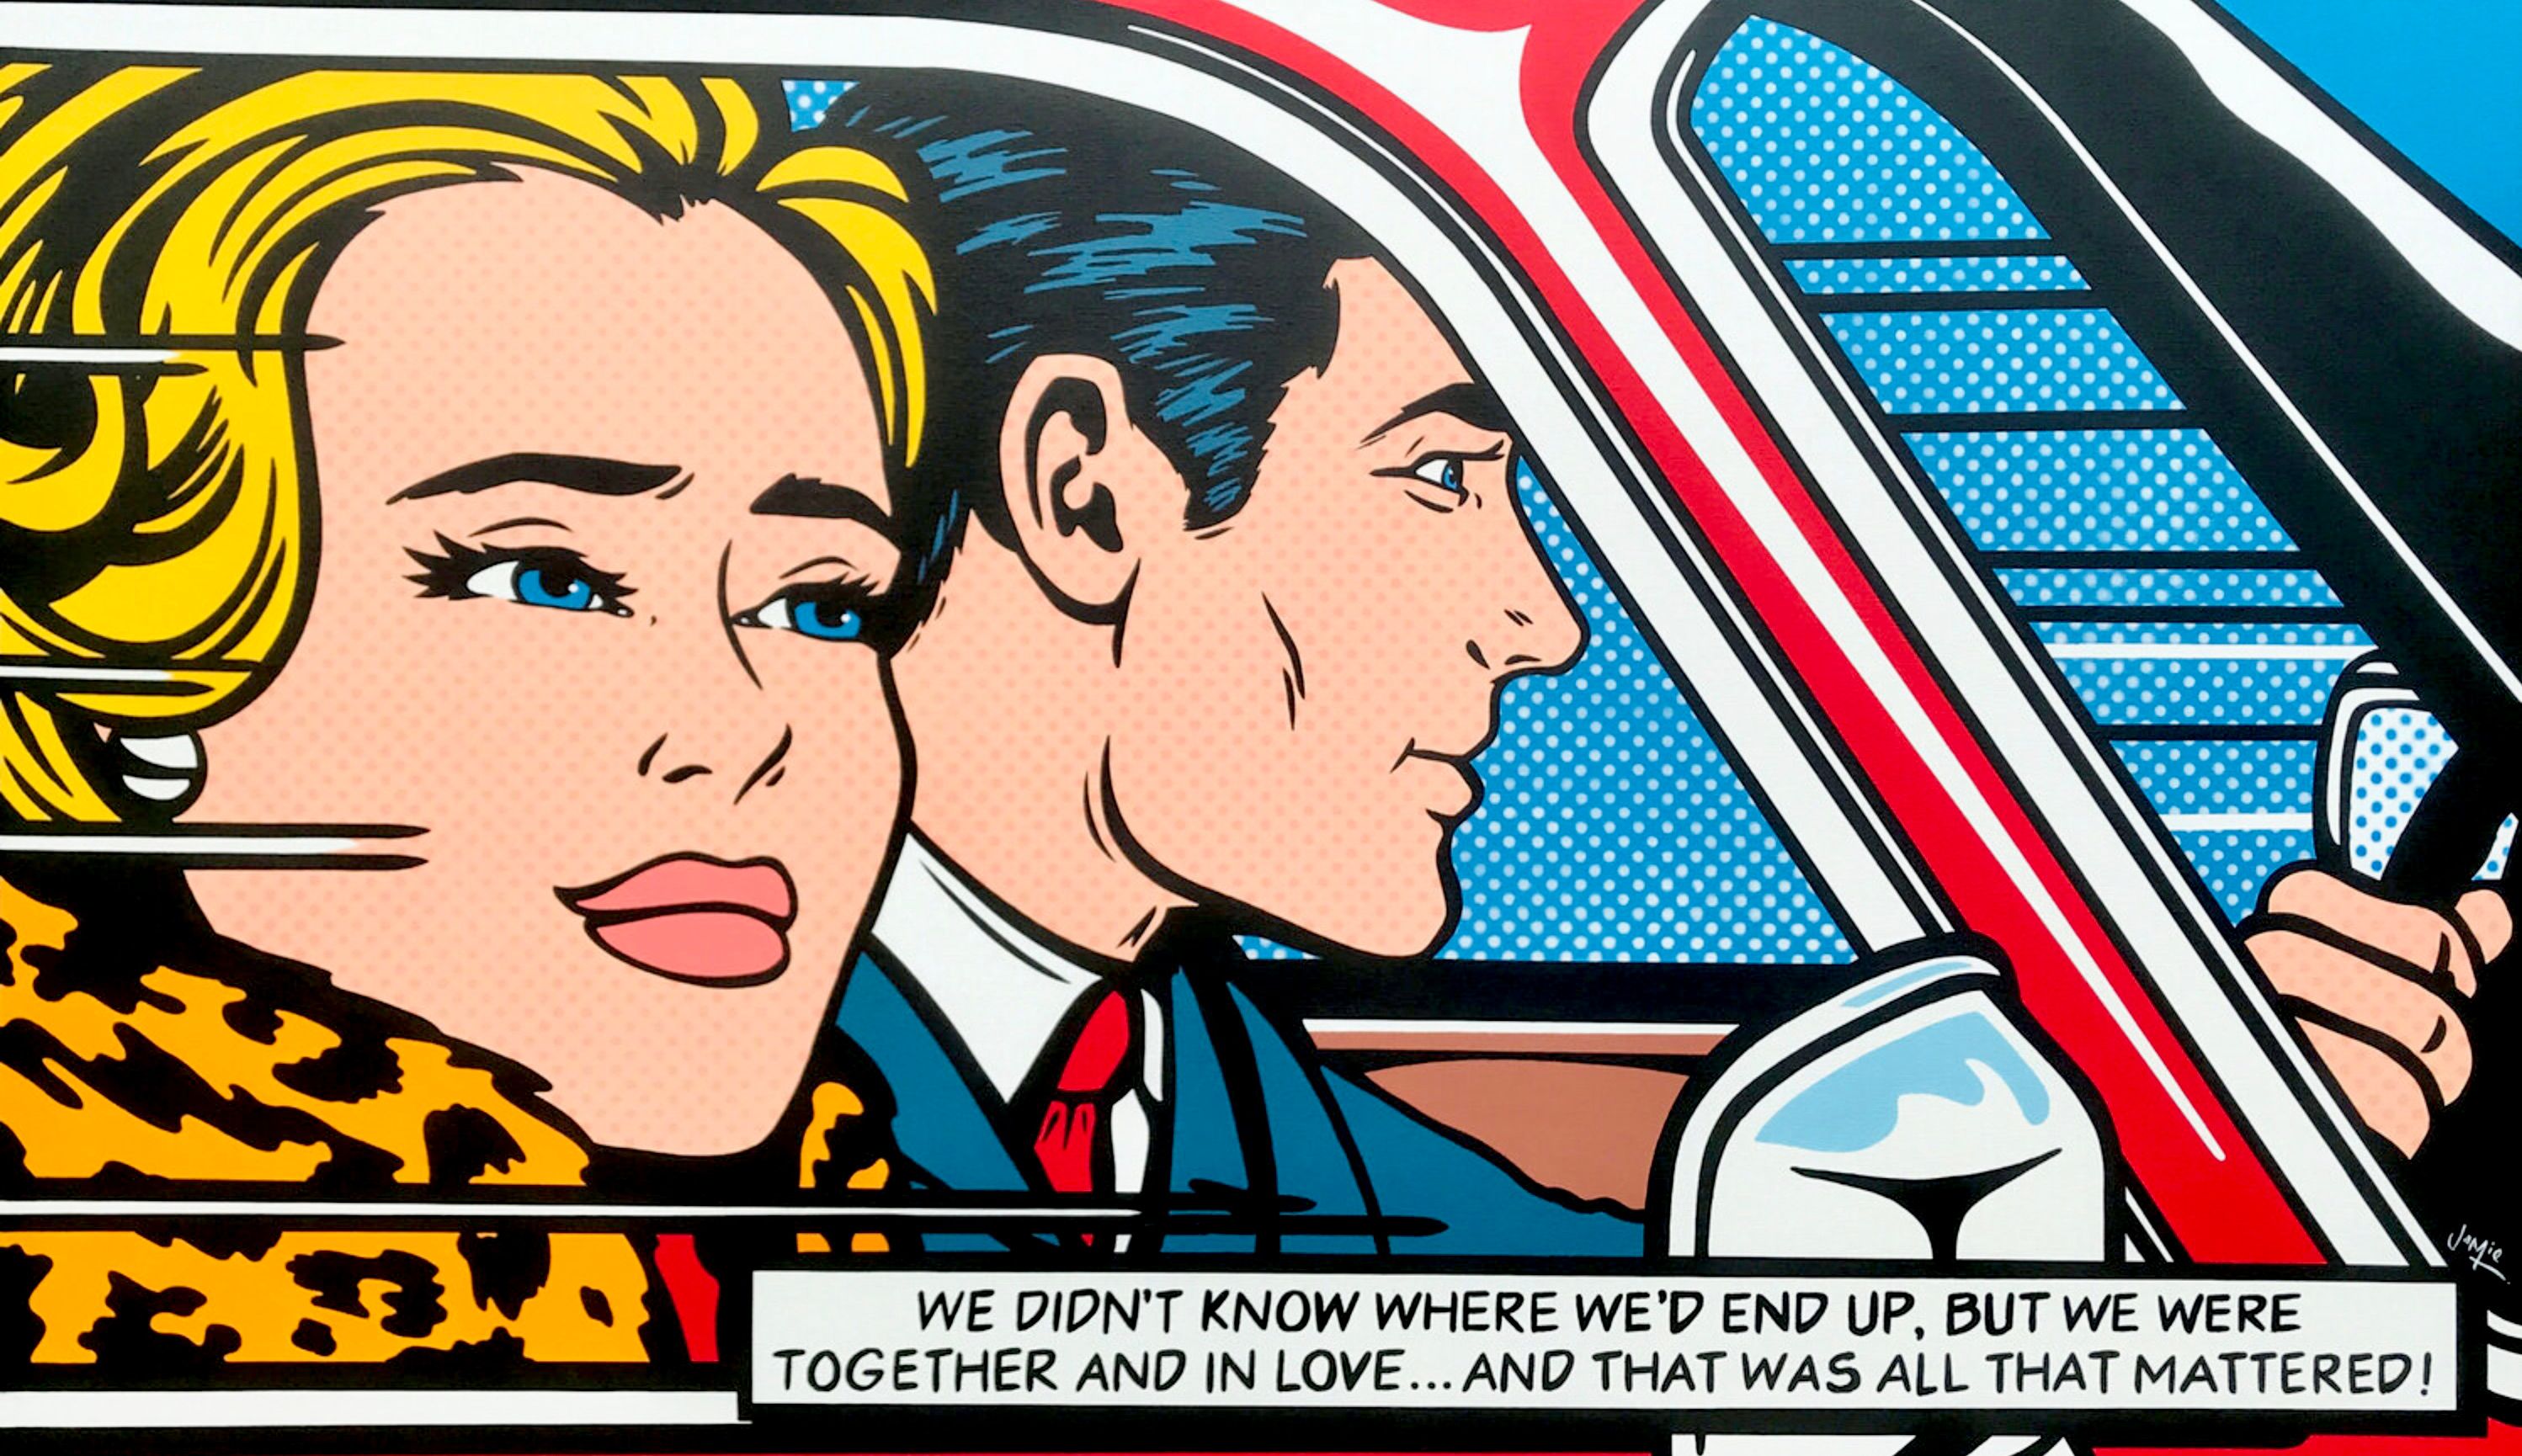 杰米-李的 "冒险 "流行艺术画，采用漫画风格，原创设计了一对年轻夫妇。想象一下利希滕斯坦的画作《在车上》之后的下一个场景。漫画风格的原创流行艺术画，画的是一对相爱的年轻夫妇去公路旅行。